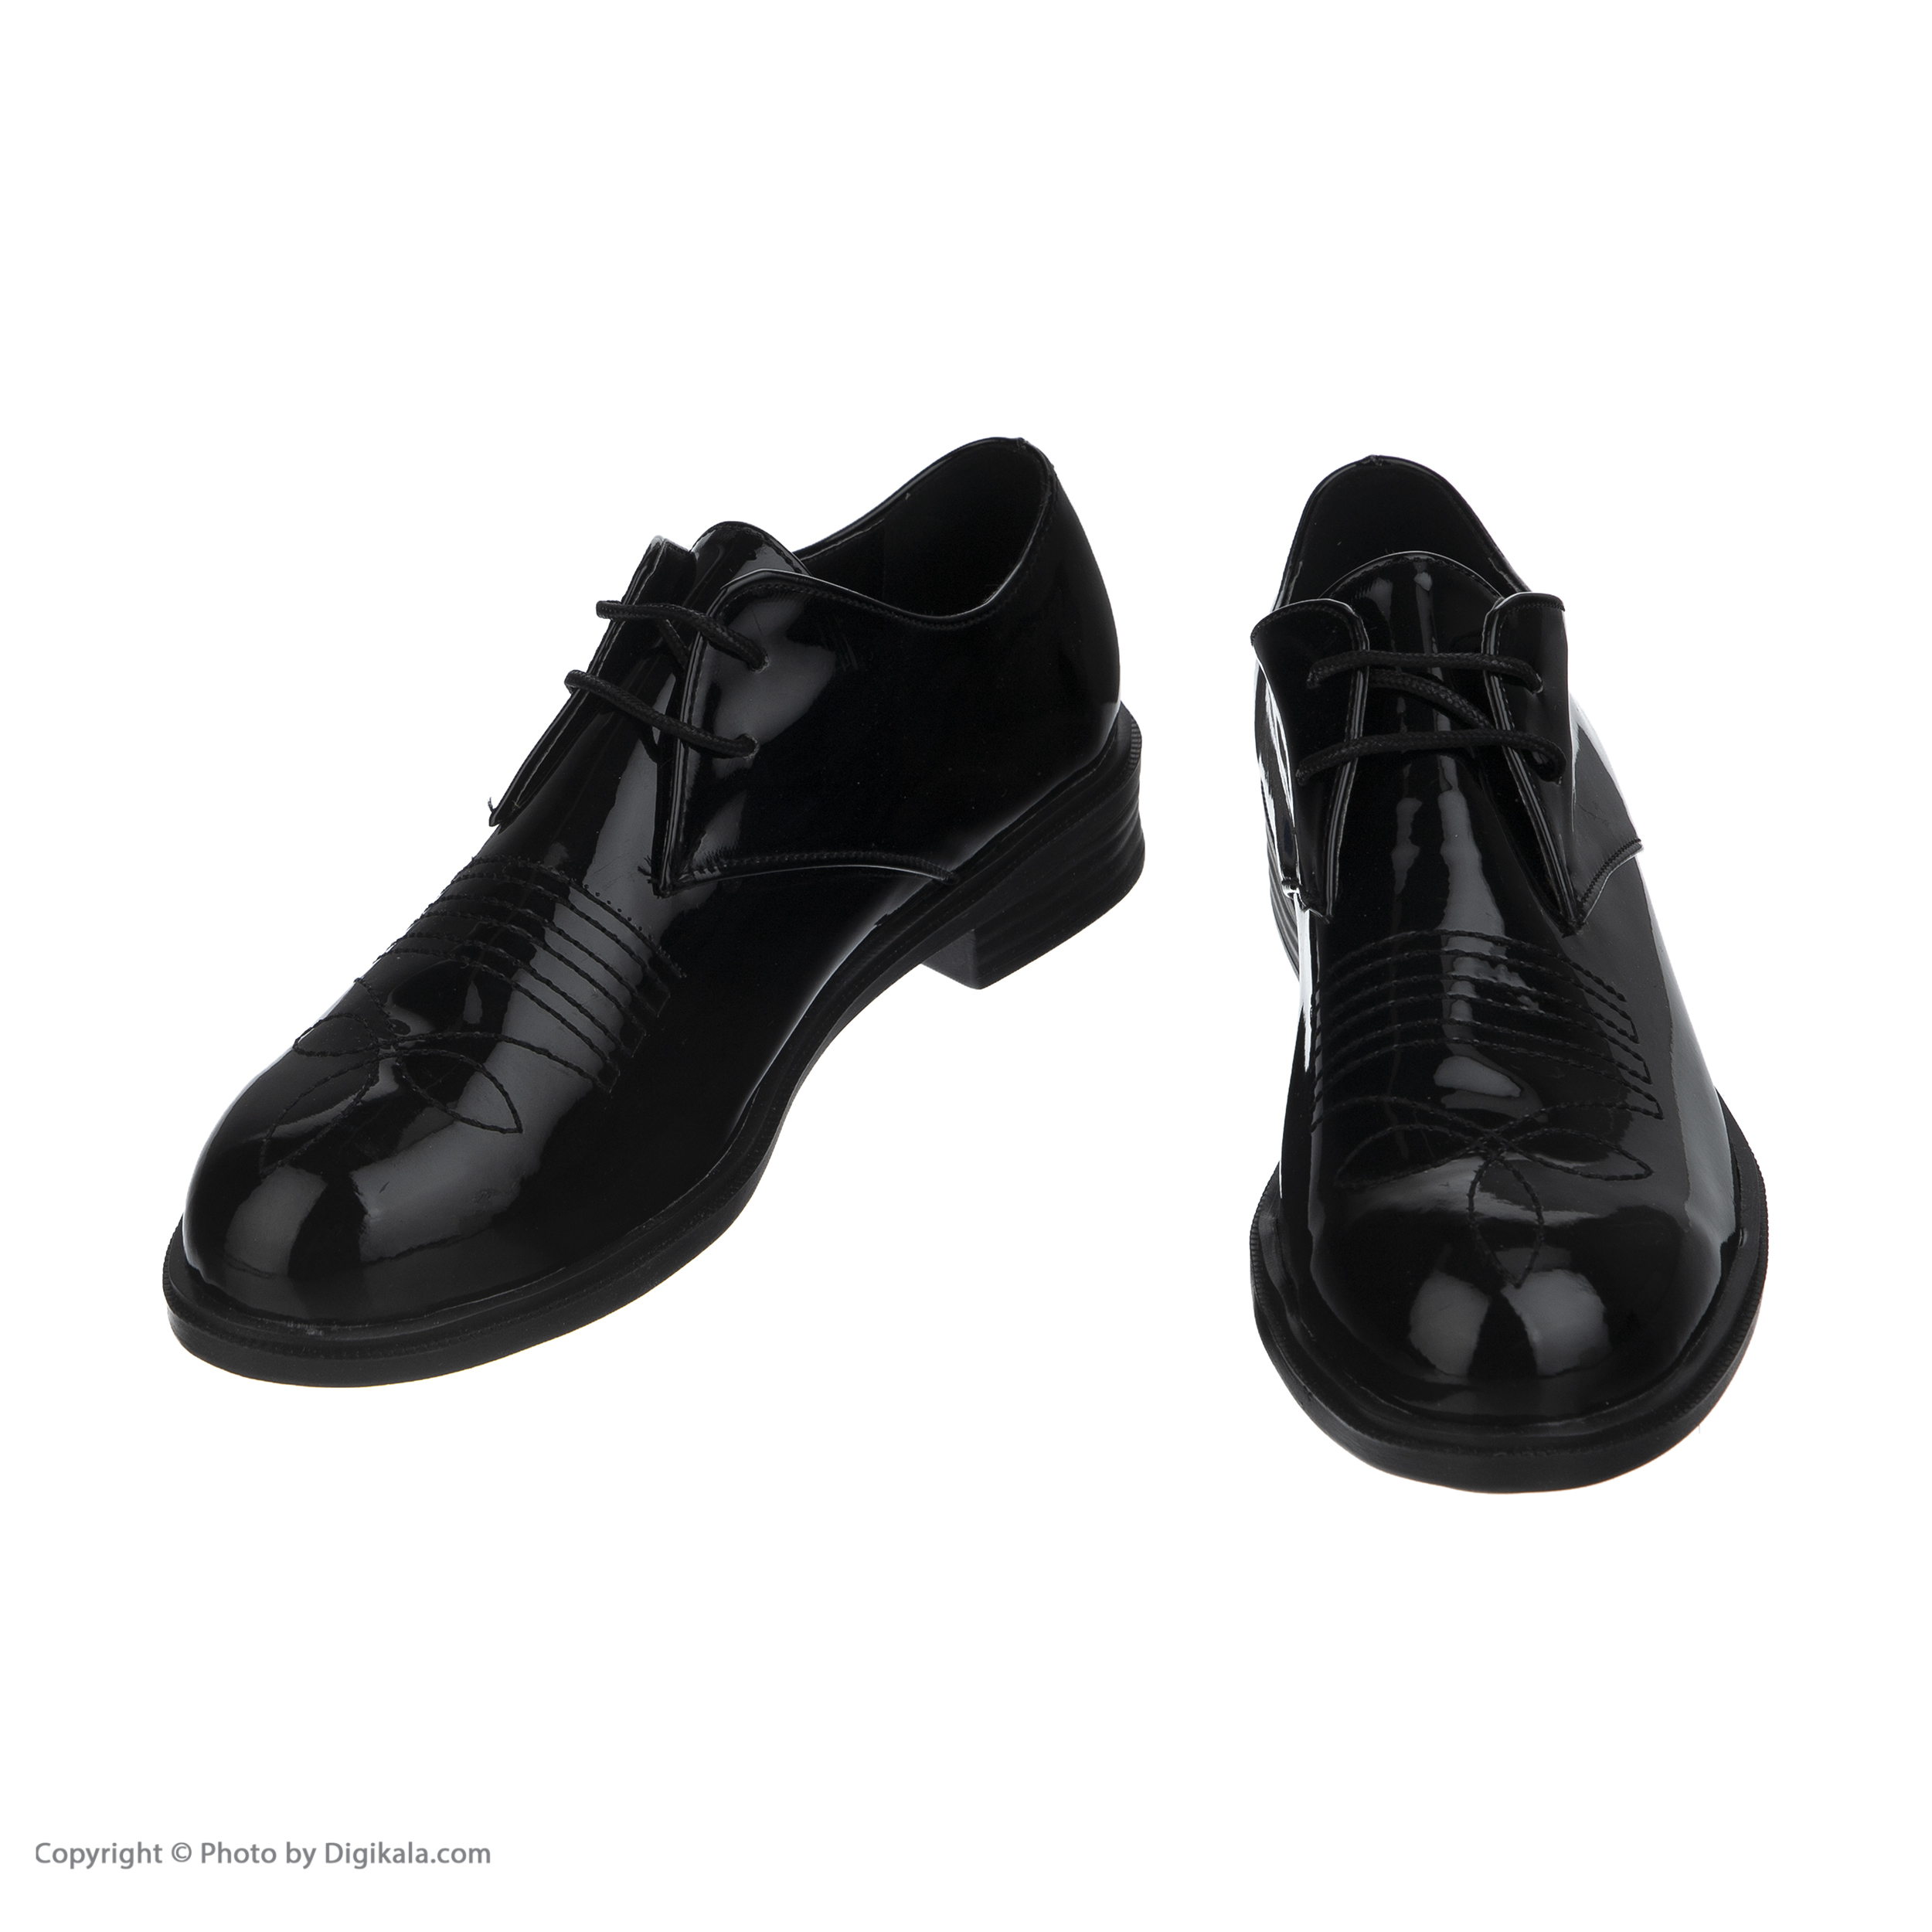  کفش مردانه لبتو مدل 1058-99 -  - 4